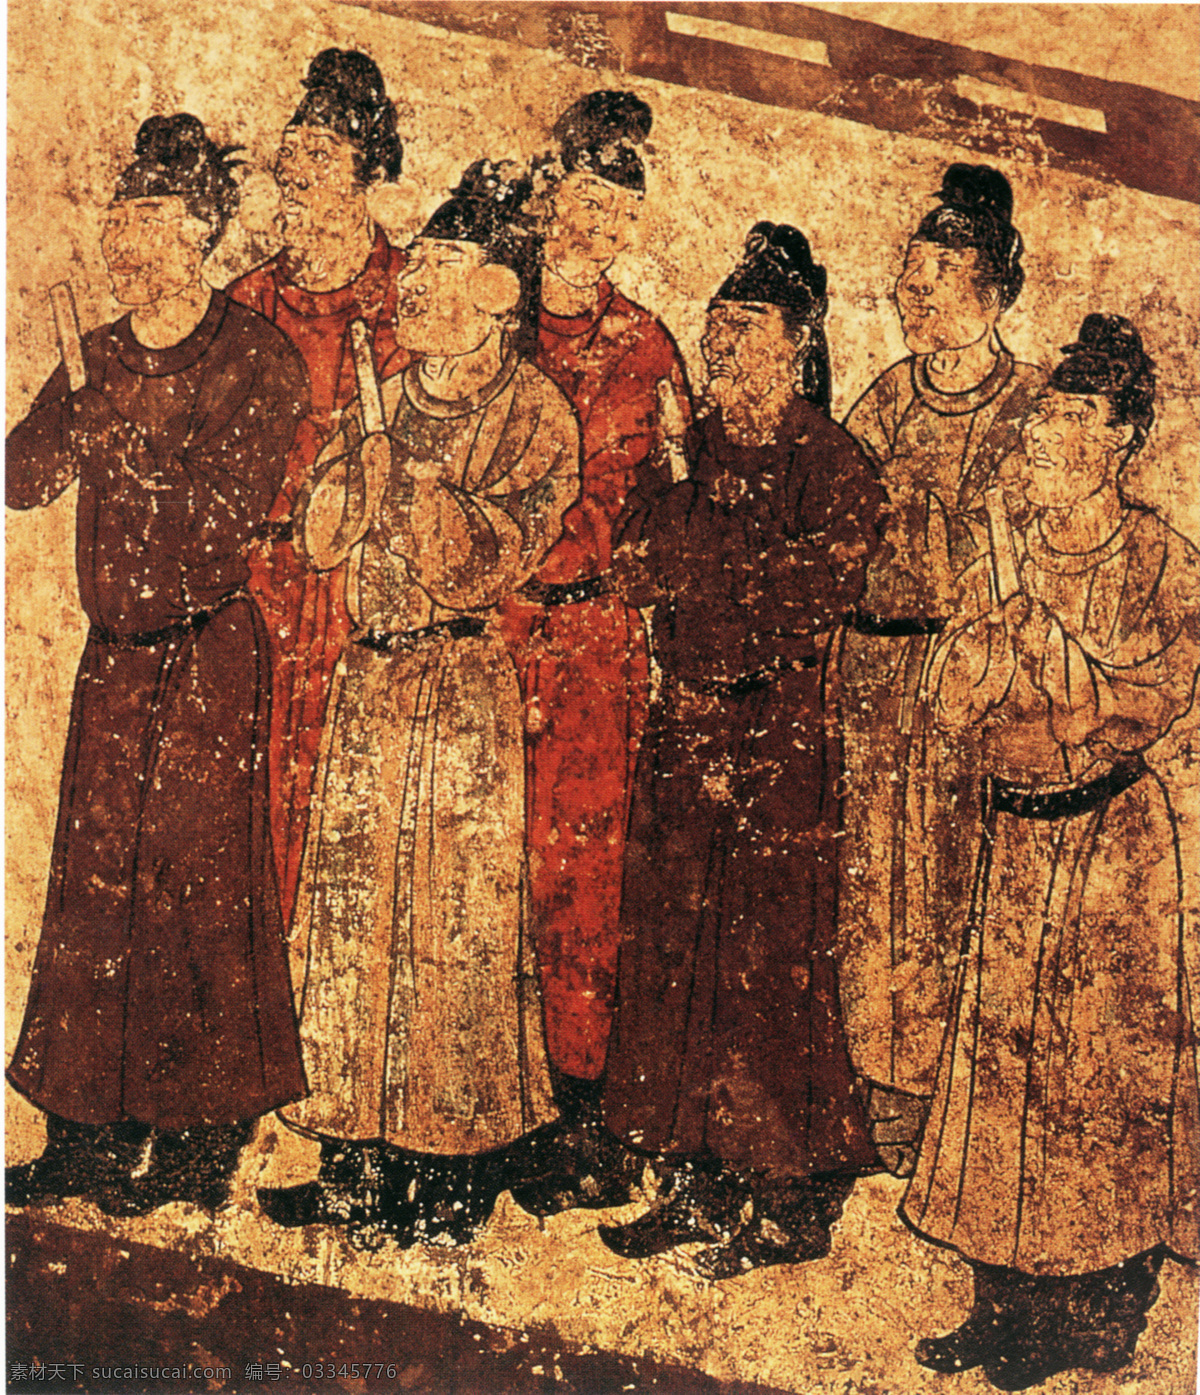 男侍从图 人物画 中国 古画 中国古画 设计素材 人物名画 古典藏画 书画美术 棕色